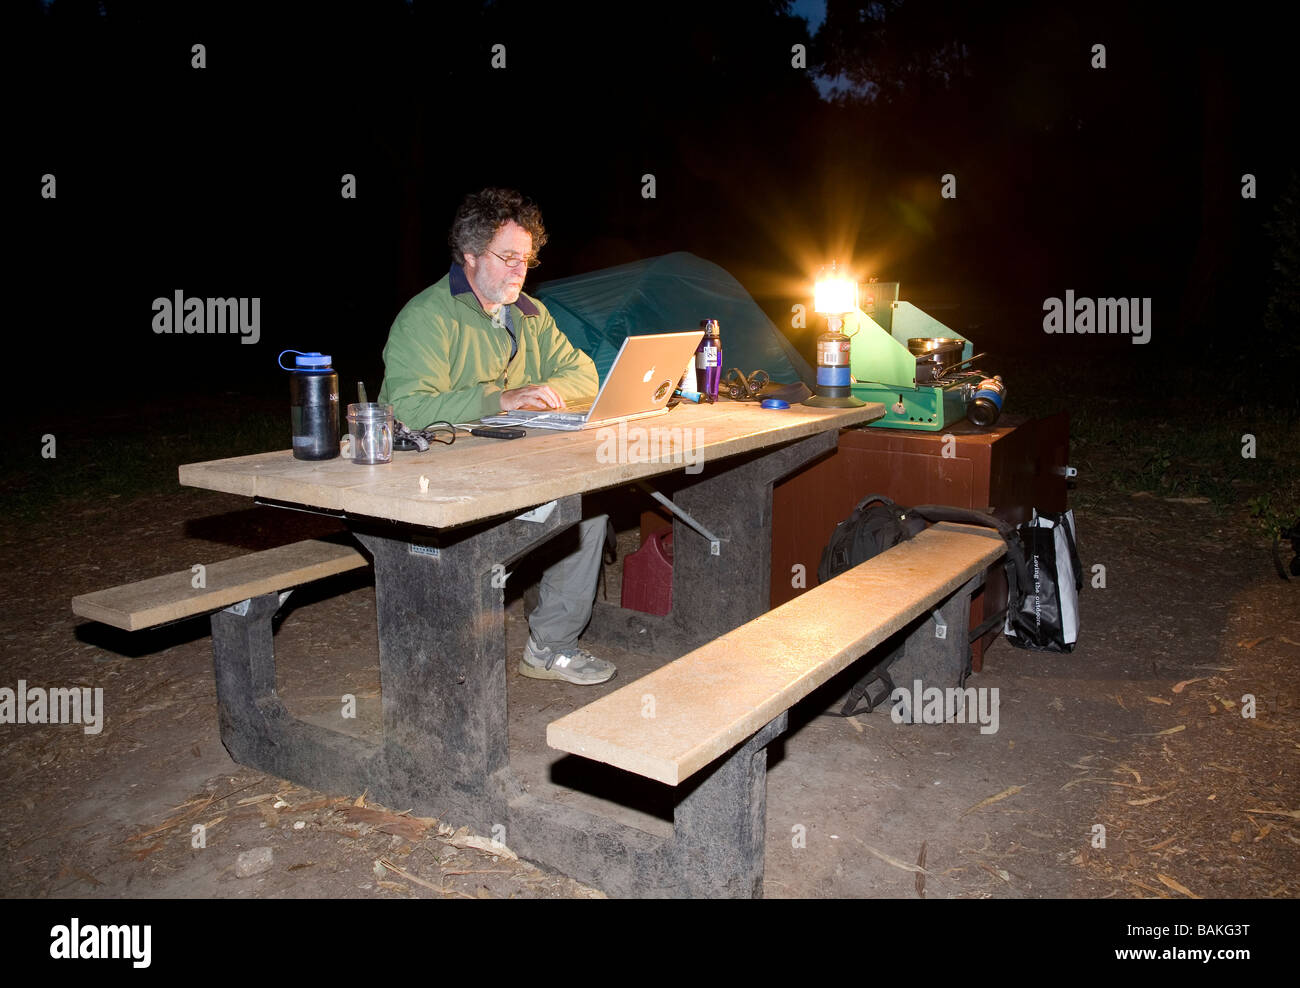 Mann mit Hilfe eines Computers beim camping, Insel Santa Cruz, Channel Islands Nationalpark, Kalifornien Stockfoto